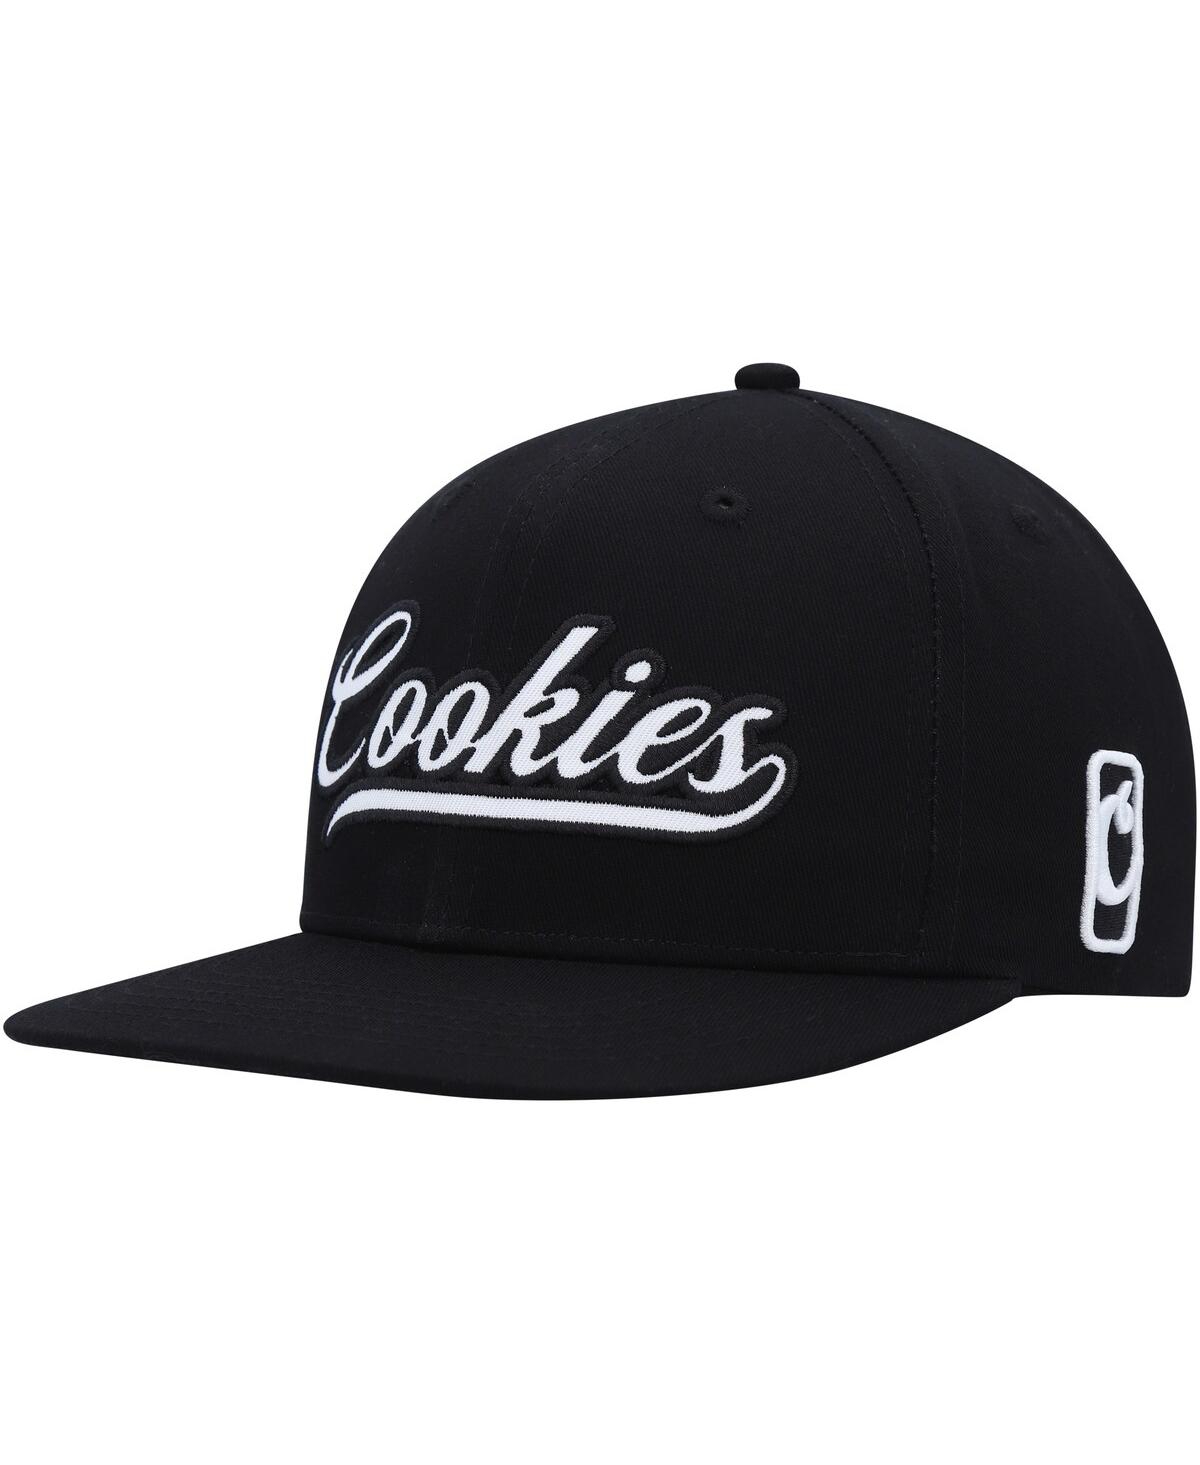 Men's Cookies Black Pack Talk Snapback Hat - Black